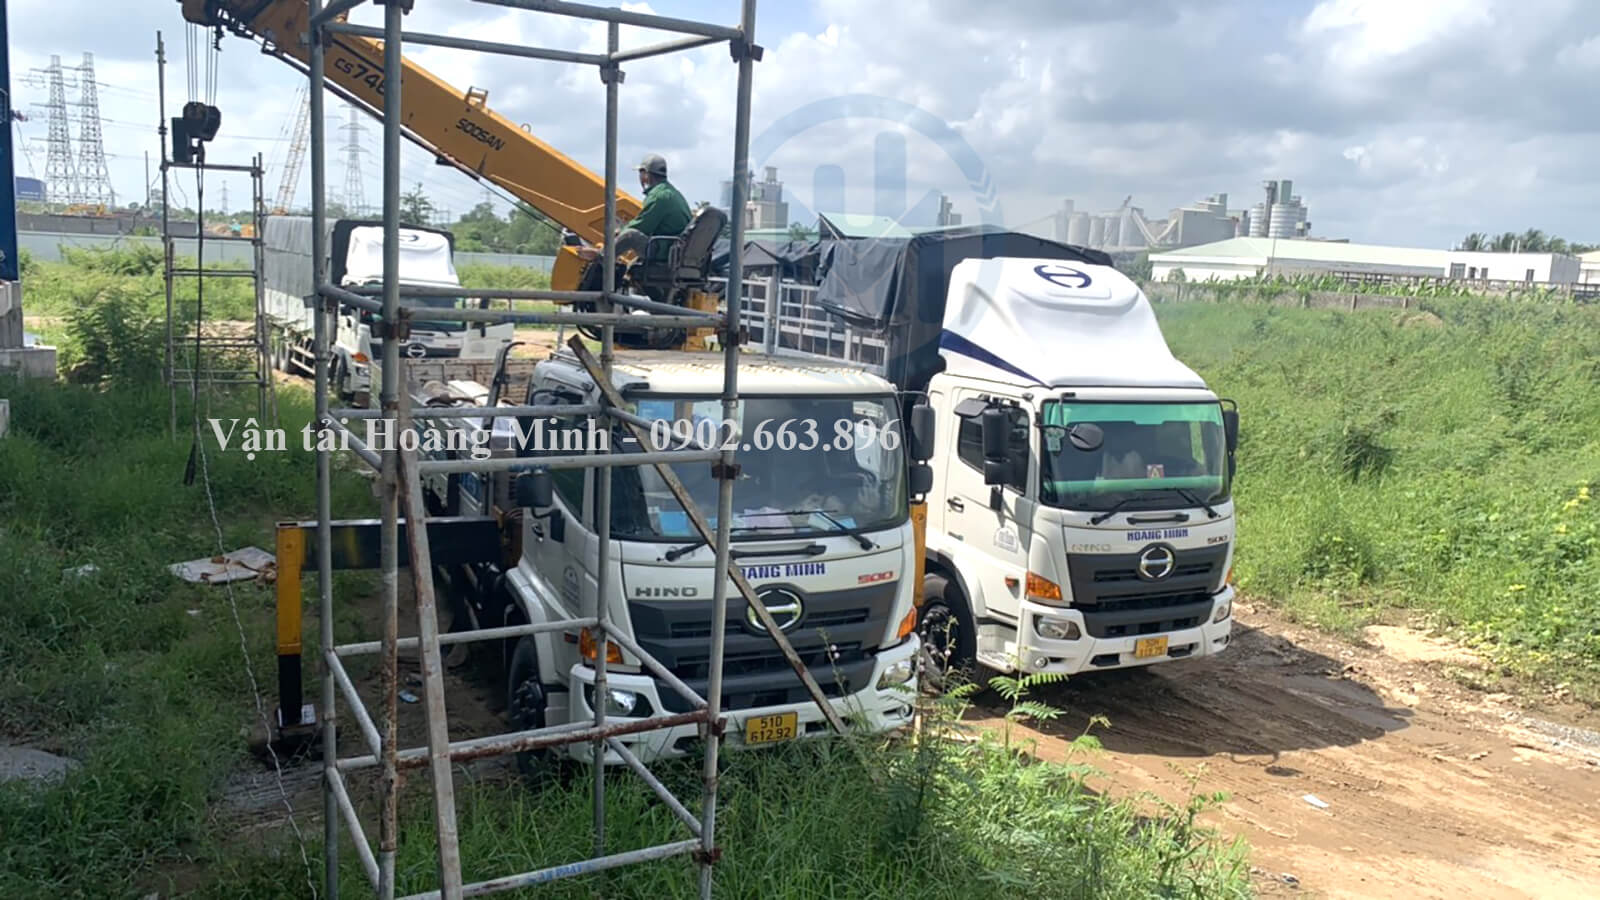 Hình ảnh xe tải Hoàng Minh chở hàng cho khách tại các tỉnh thành.jpg